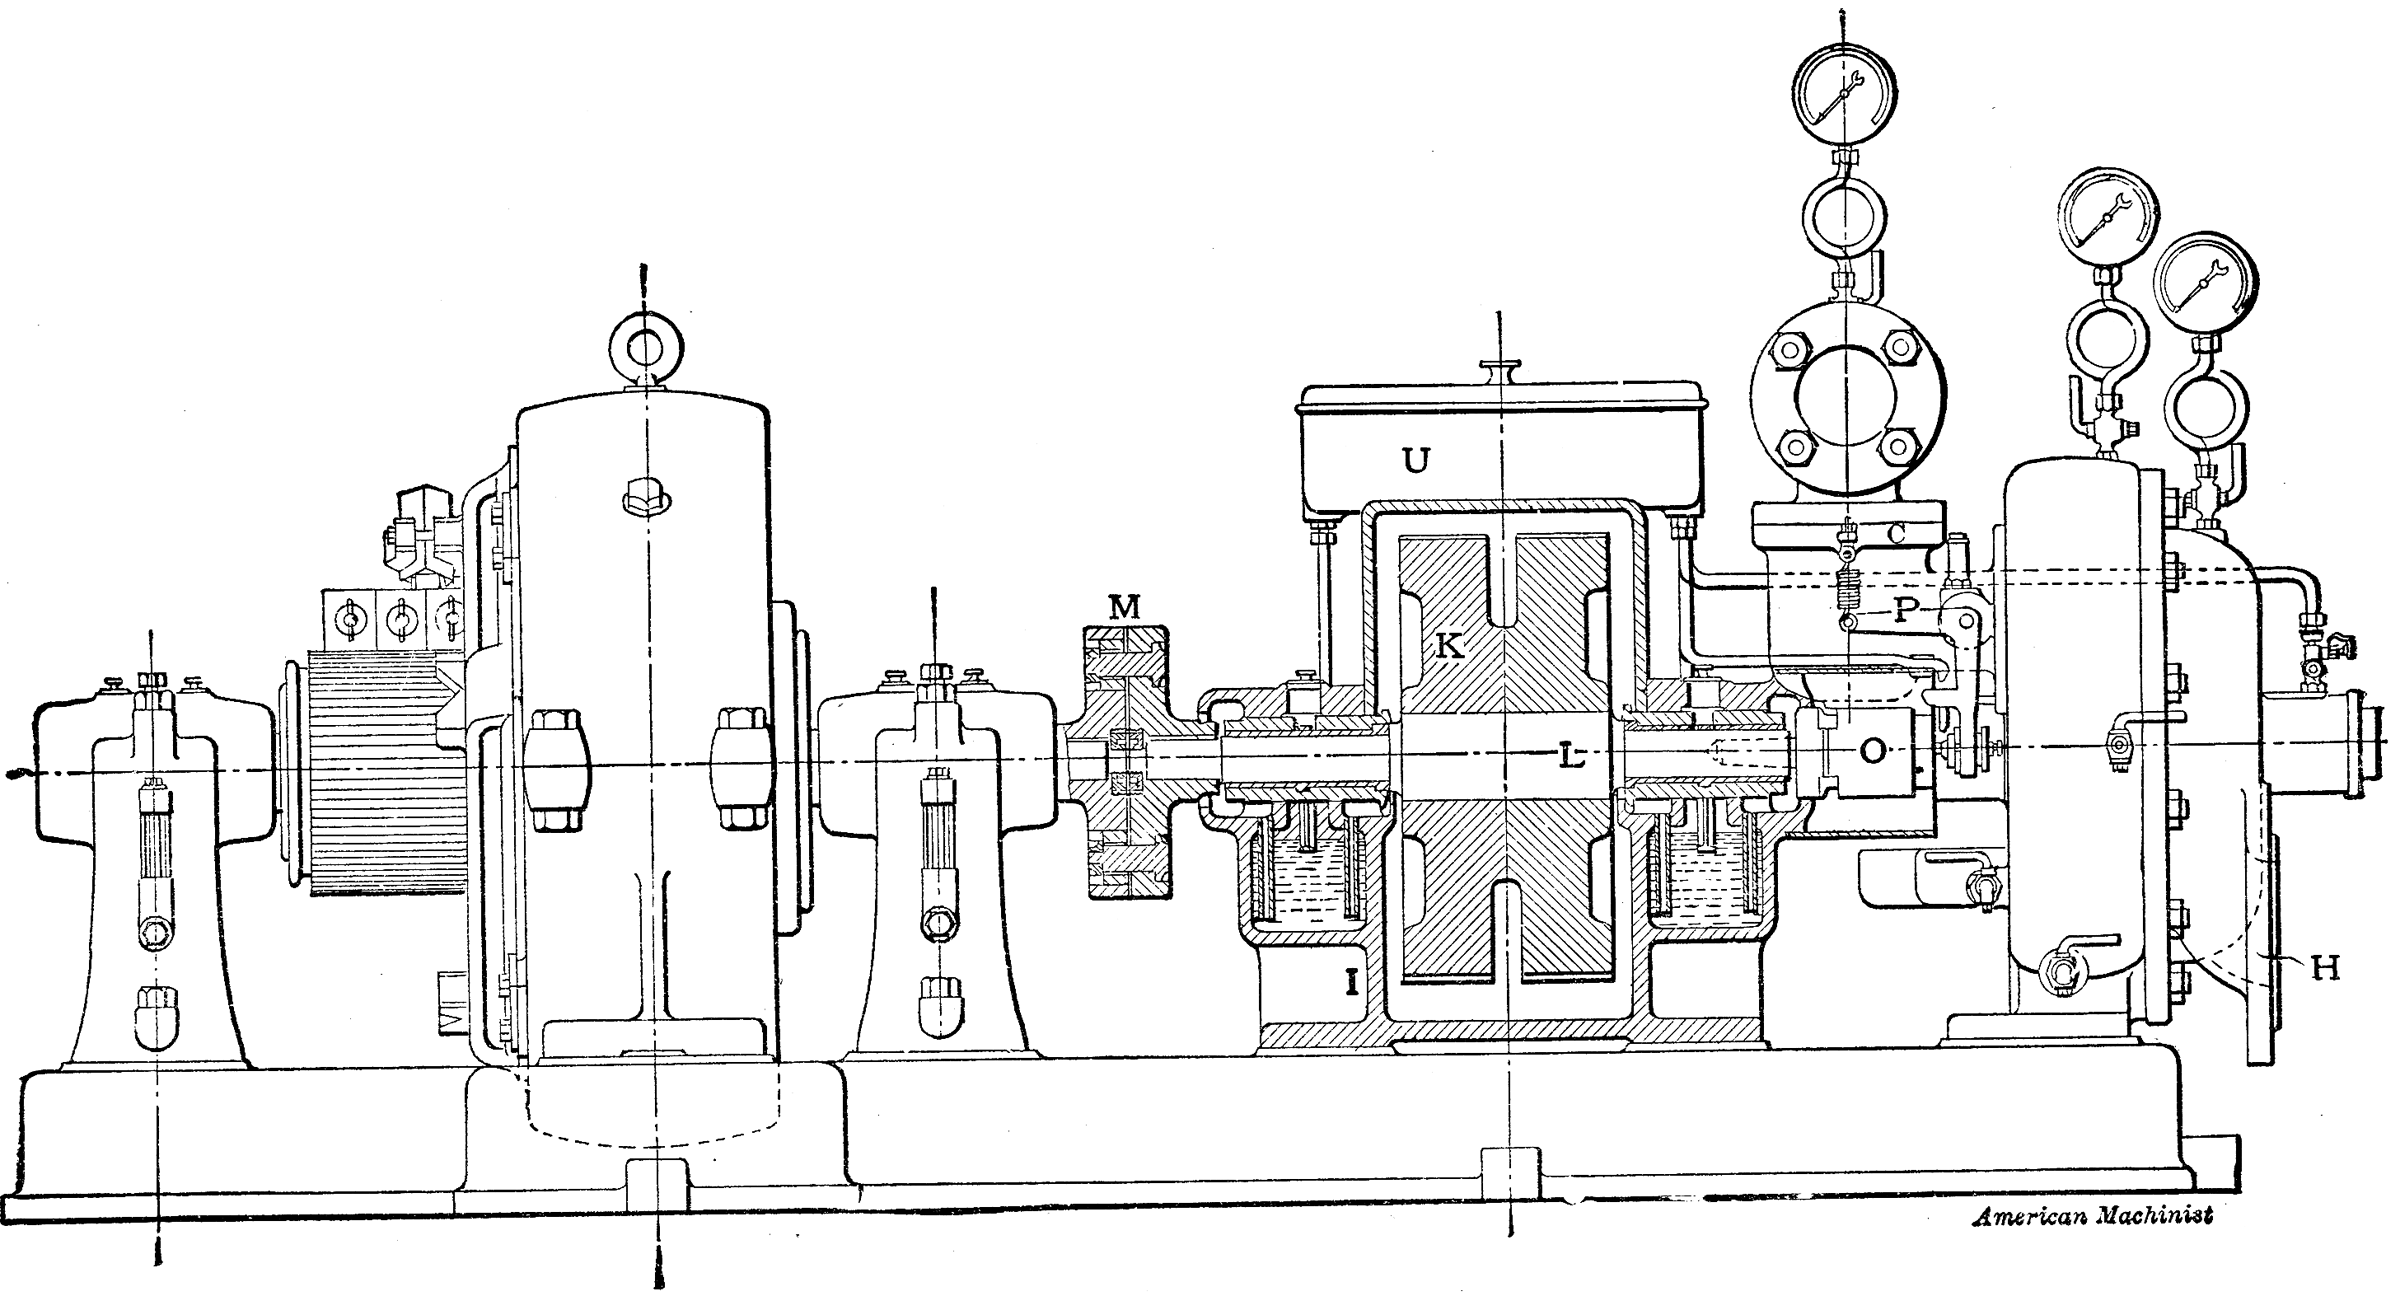 De Laval Steam Turbine Connected to Generator | ClipArt ETC turbine generator diagram 